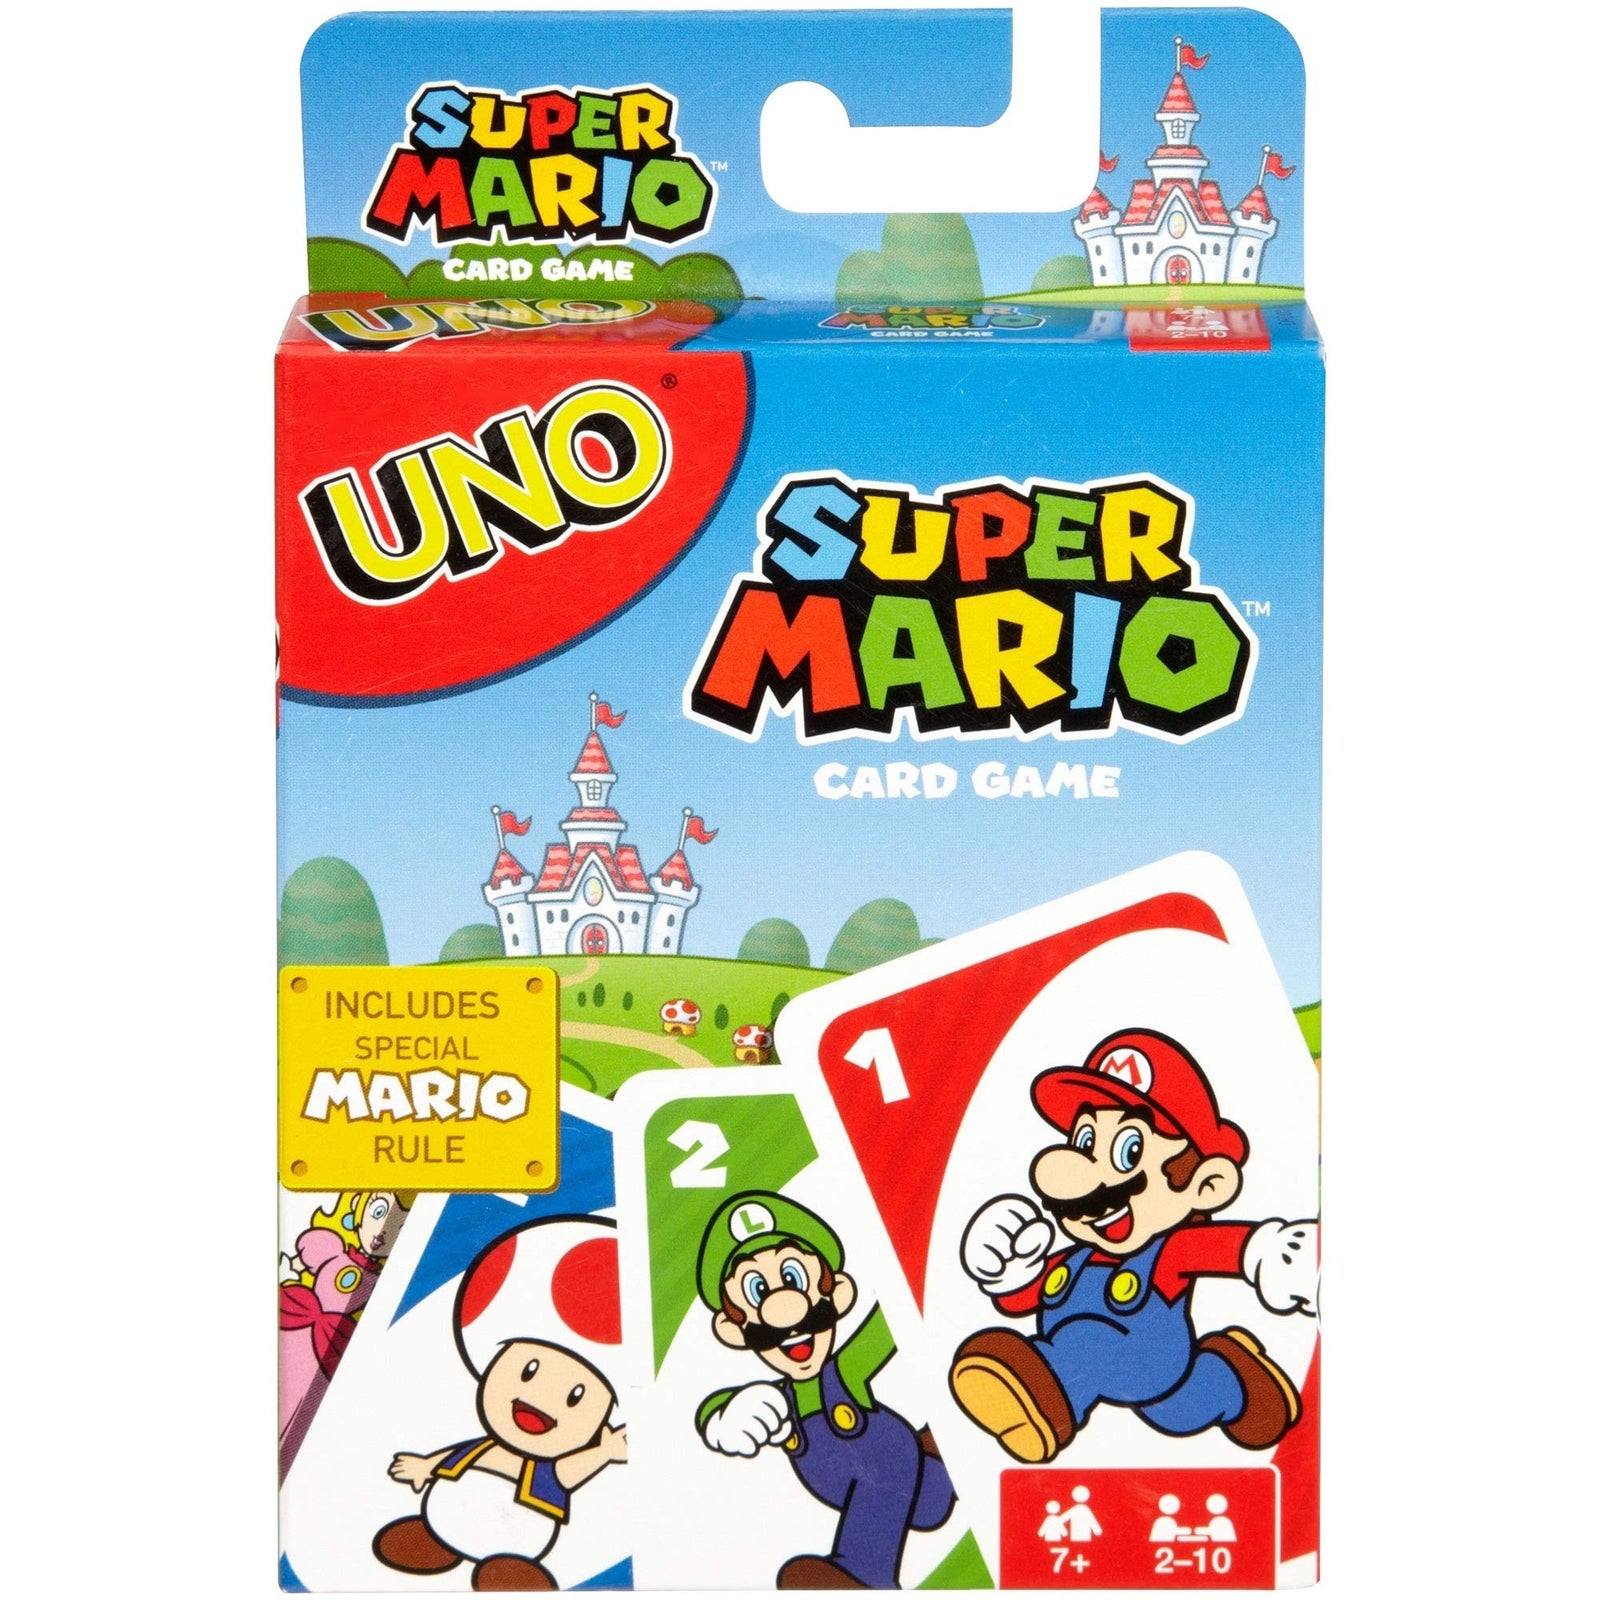 UNO Super Mario, You, Super Mario Bros, and a Game of UNO!